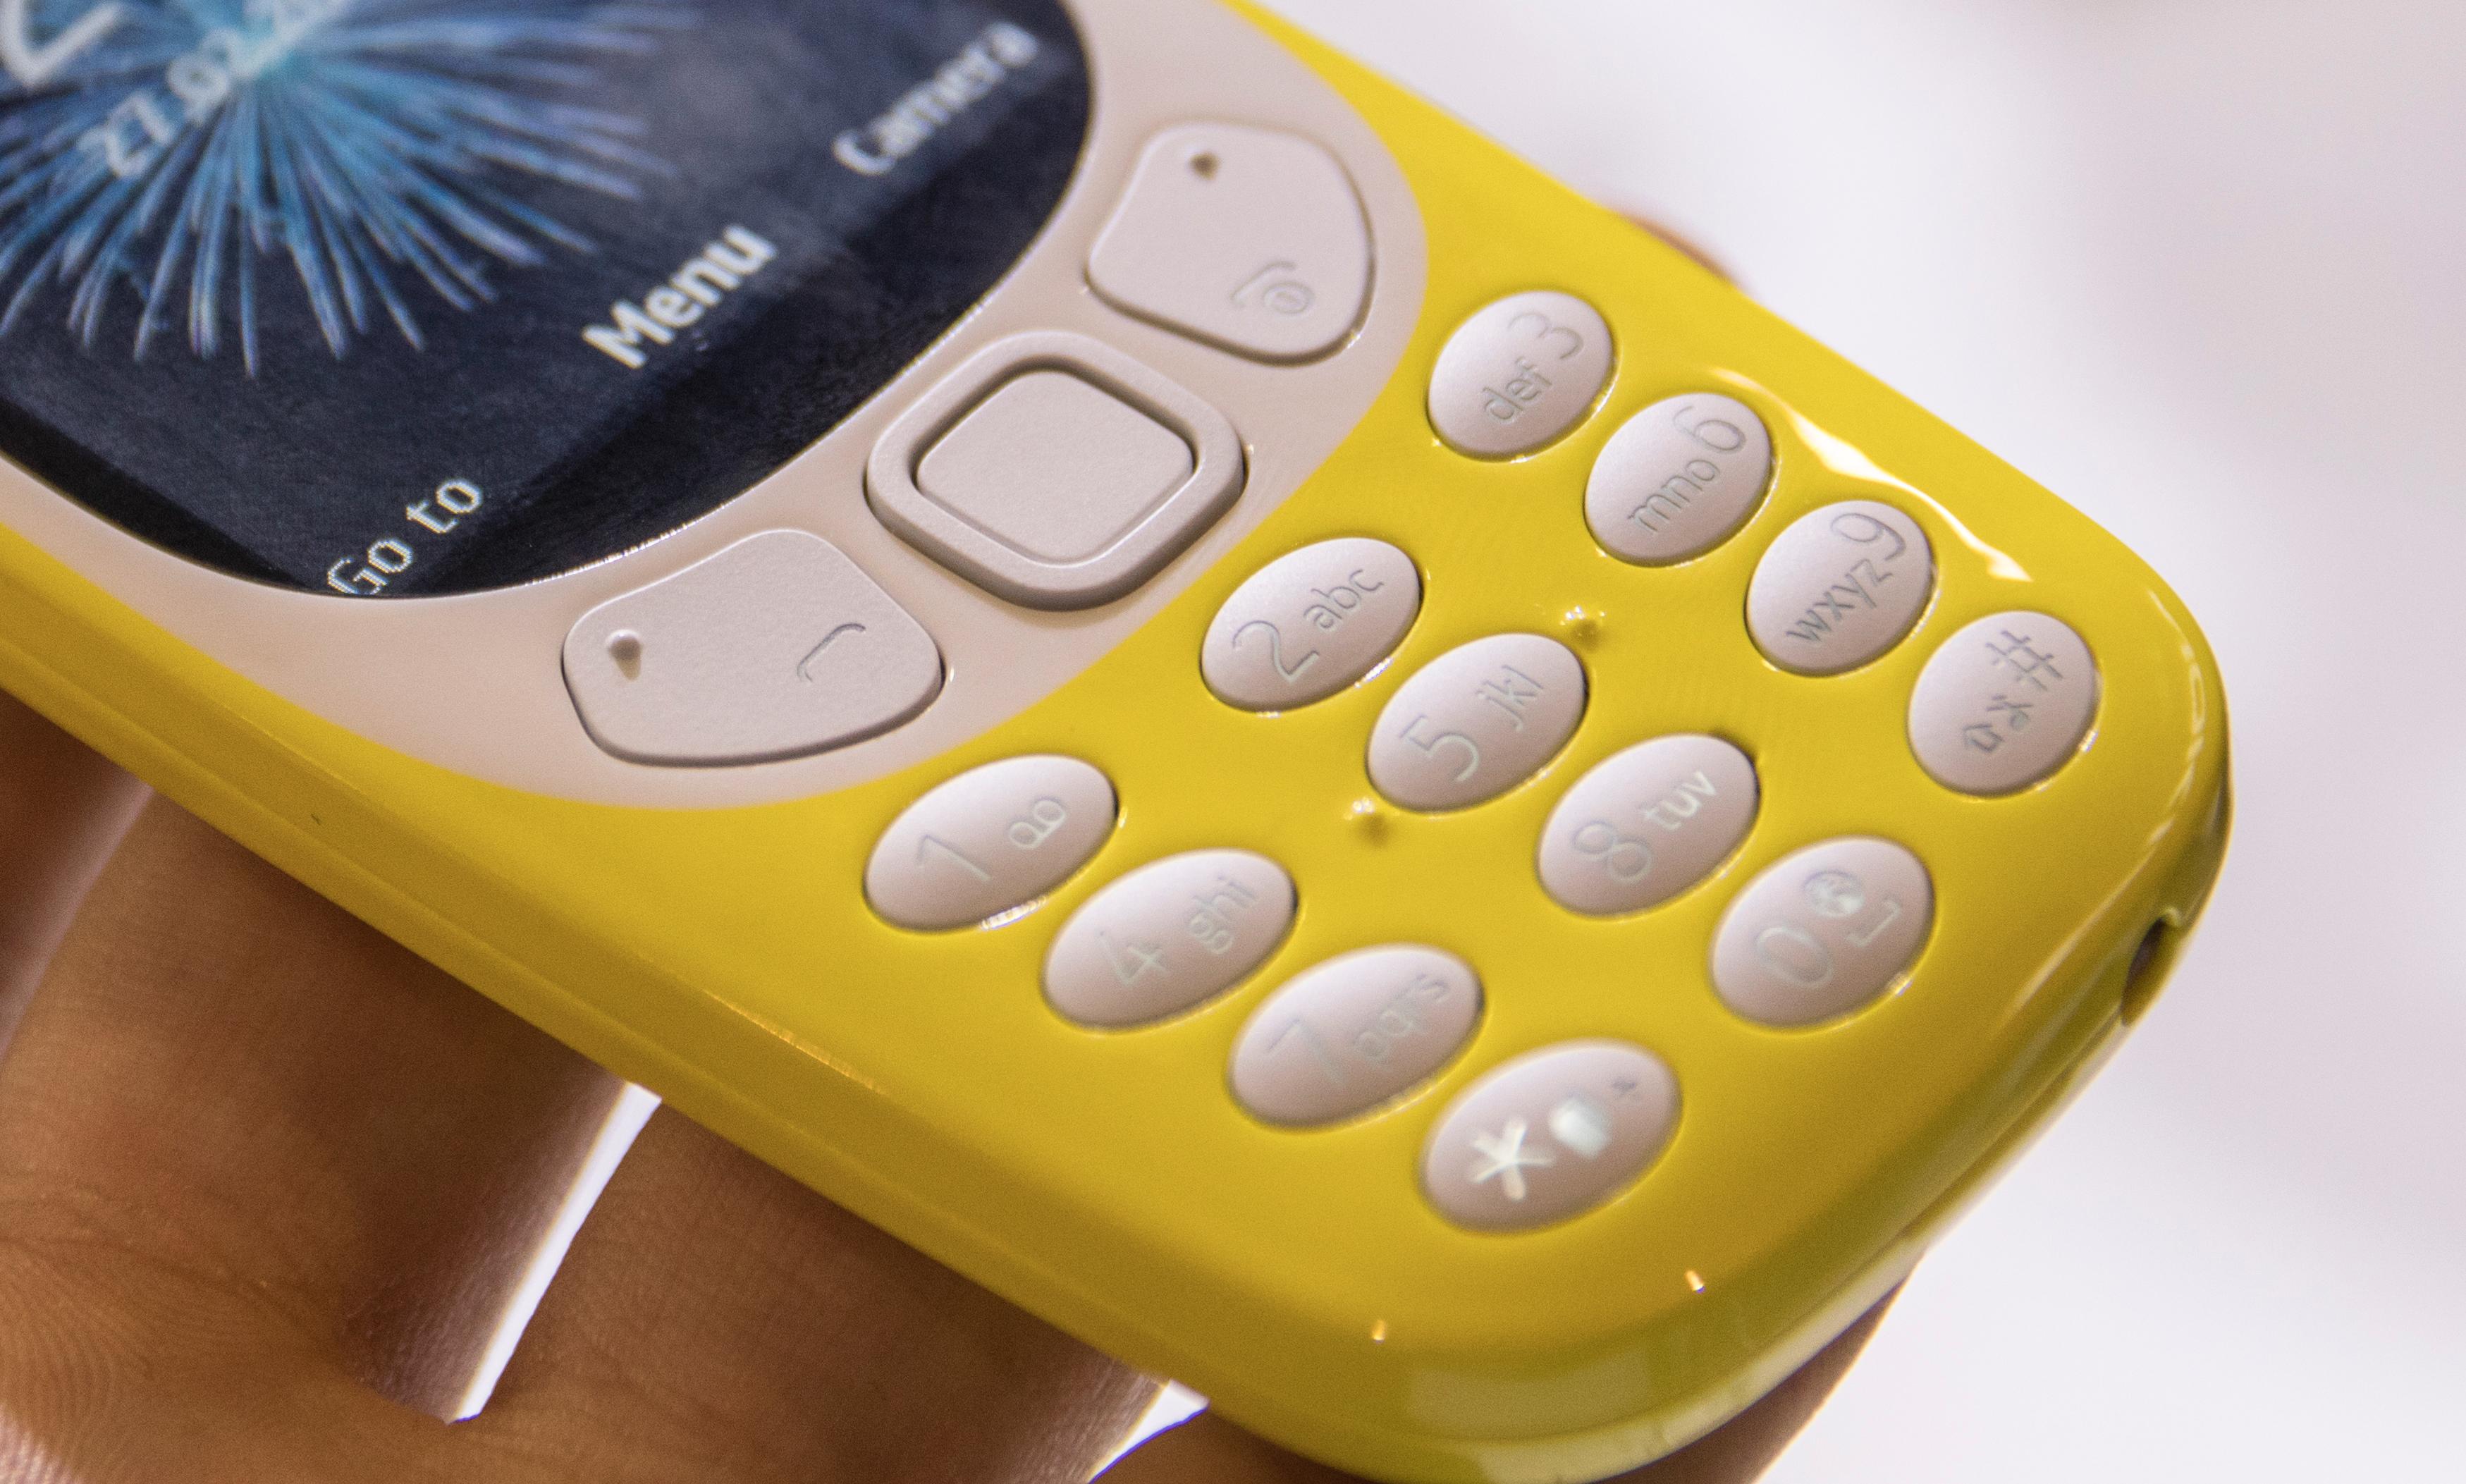 Nokia 3310 byr dessuten på et gjensyn med T9-ordlisten og klassiske mobiltaster.